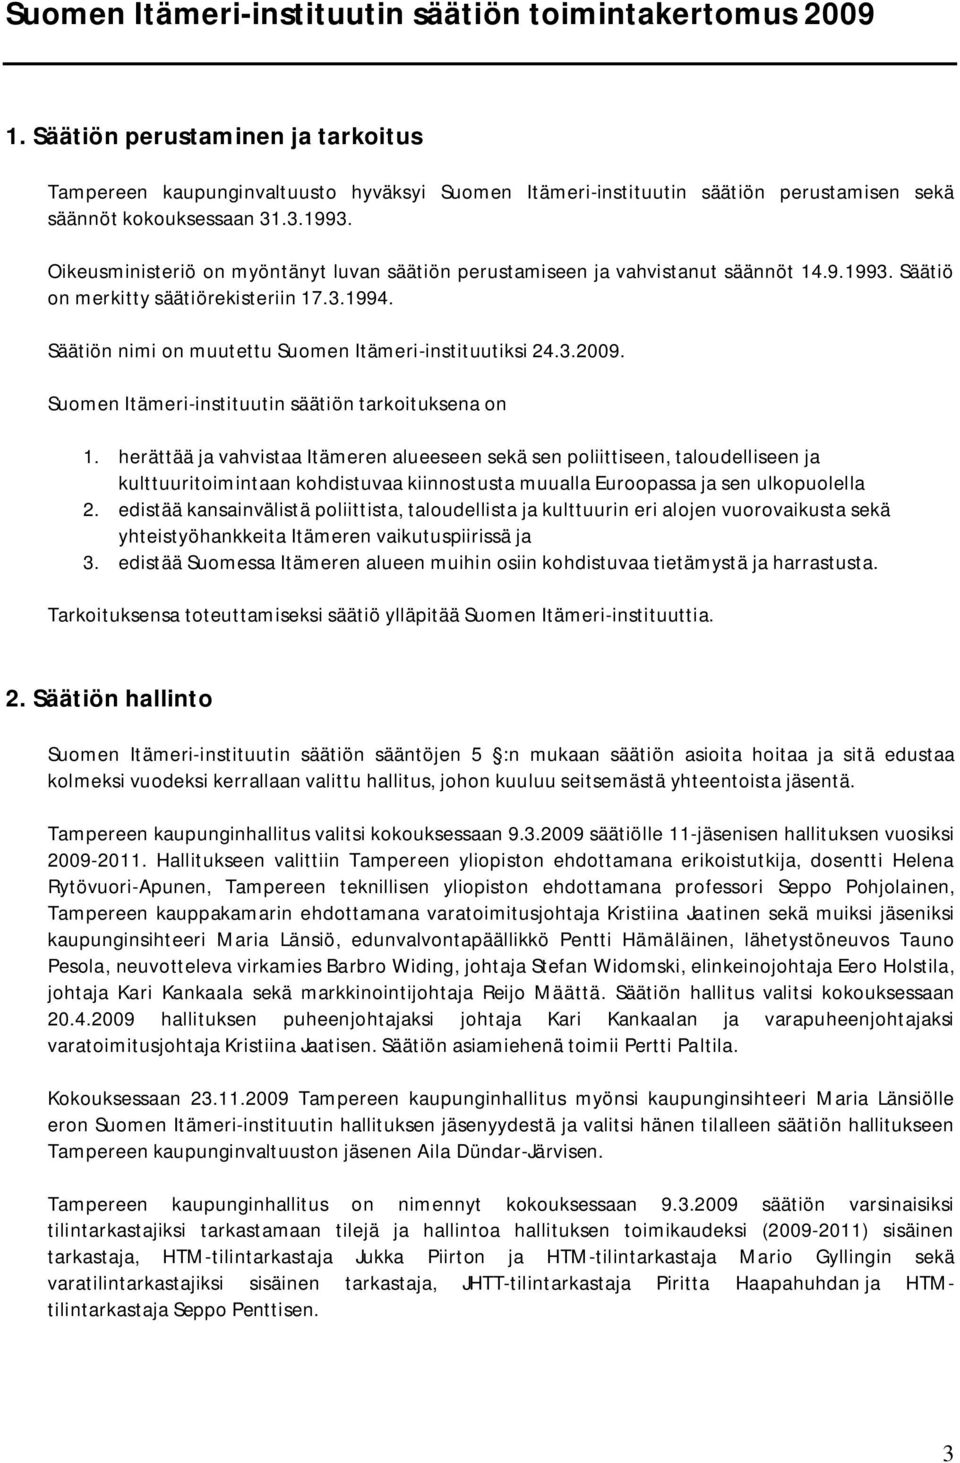 Oikeusministeriö on myöntänyt luvan säätiön perustamiseen ja vahvistanut säännöt 14.9.1993. Säätiö on merkitty säätiörekisteriin 17.3.1994. Säätiön nimi on muutettu Suomen Itämeri-instituutiksi 24.3.2009.